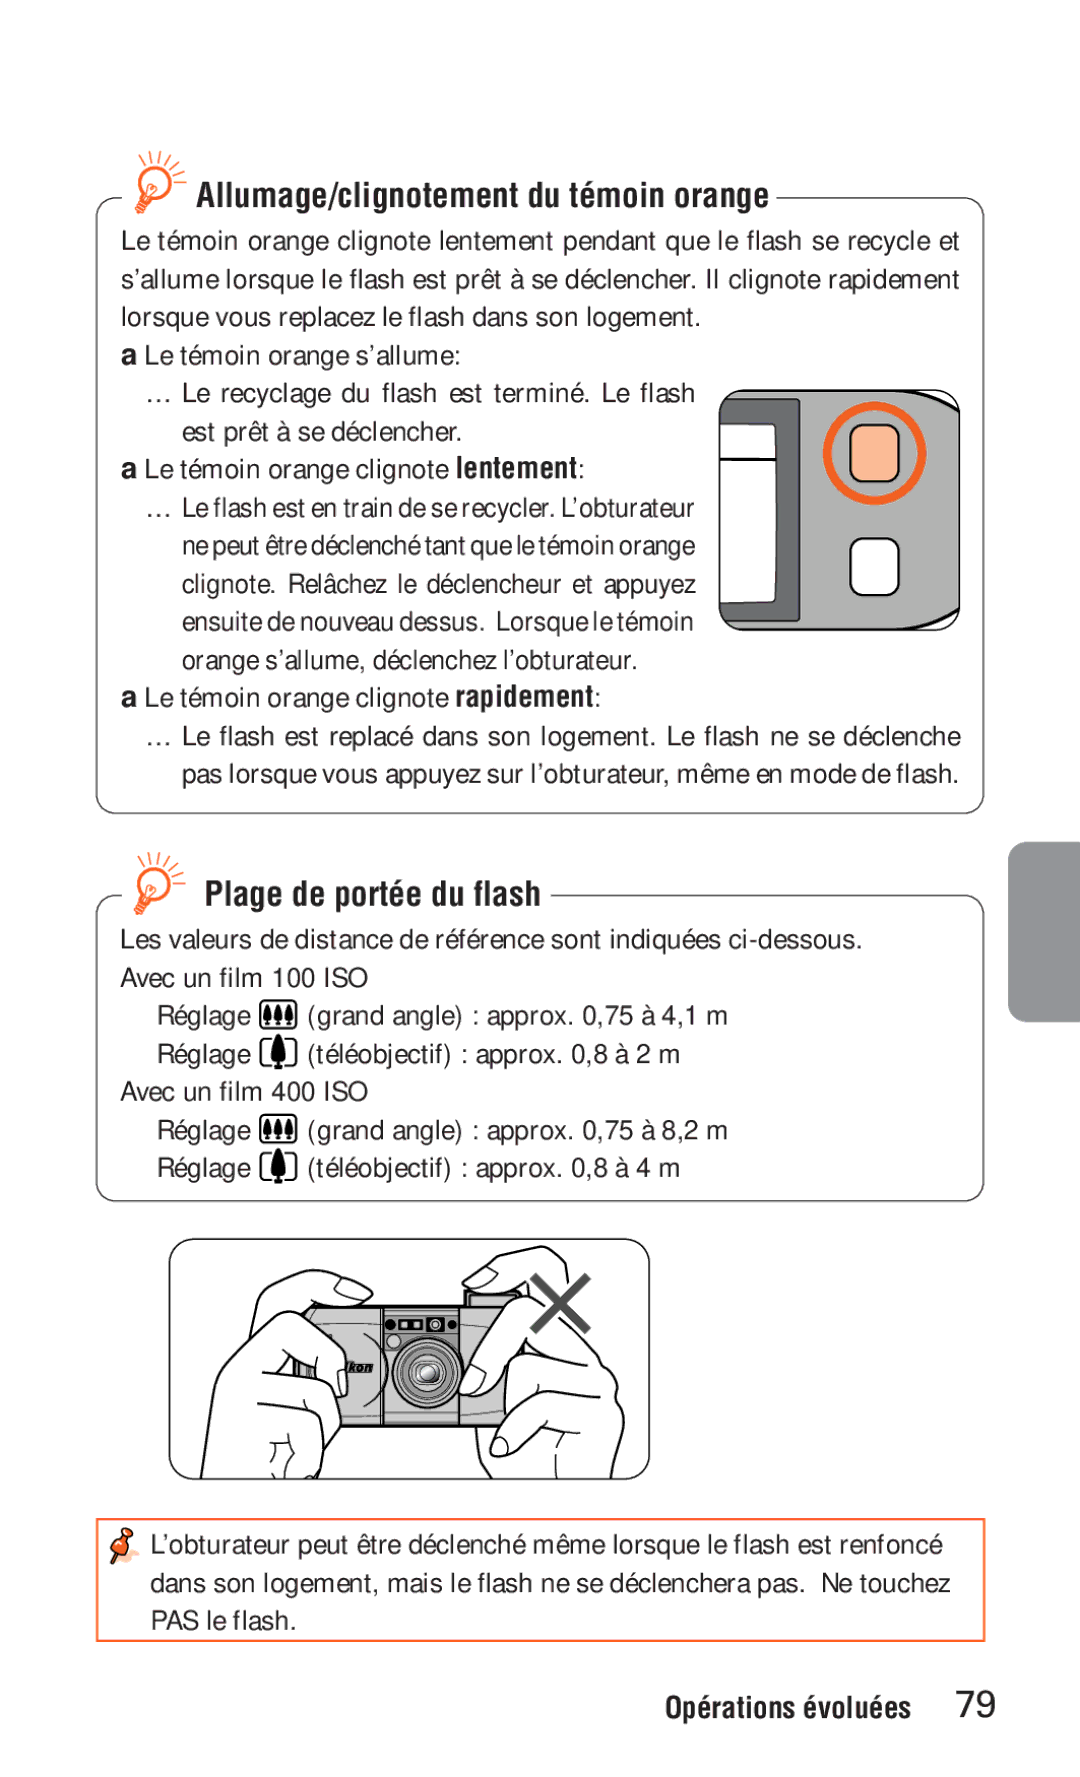 Nikon ED 120 instruction manual Allumage/clignotement du témoin orange, Plage de portée du flash 